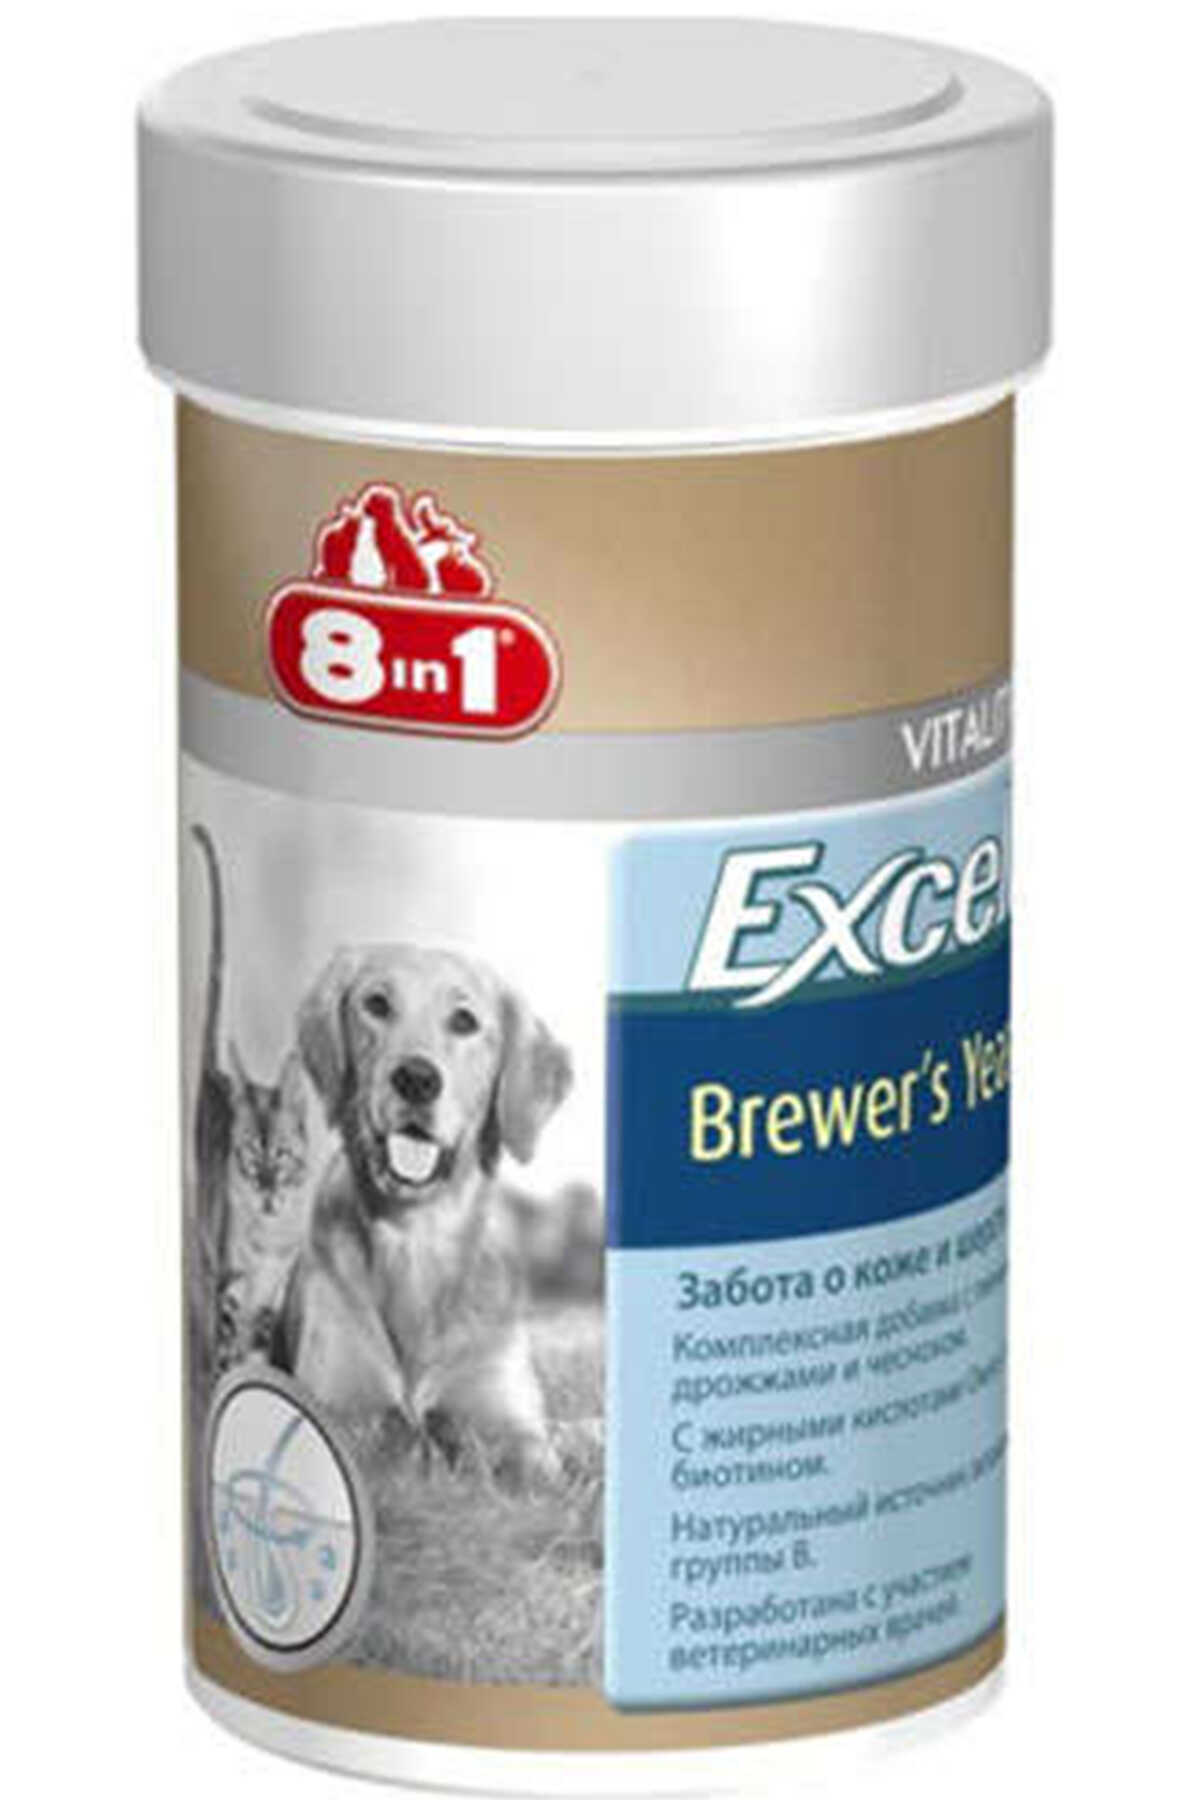 8in1 Excel Brewers Yeast Köpekler için Sarımsaklı Multivitamin Tablet 140 Adet